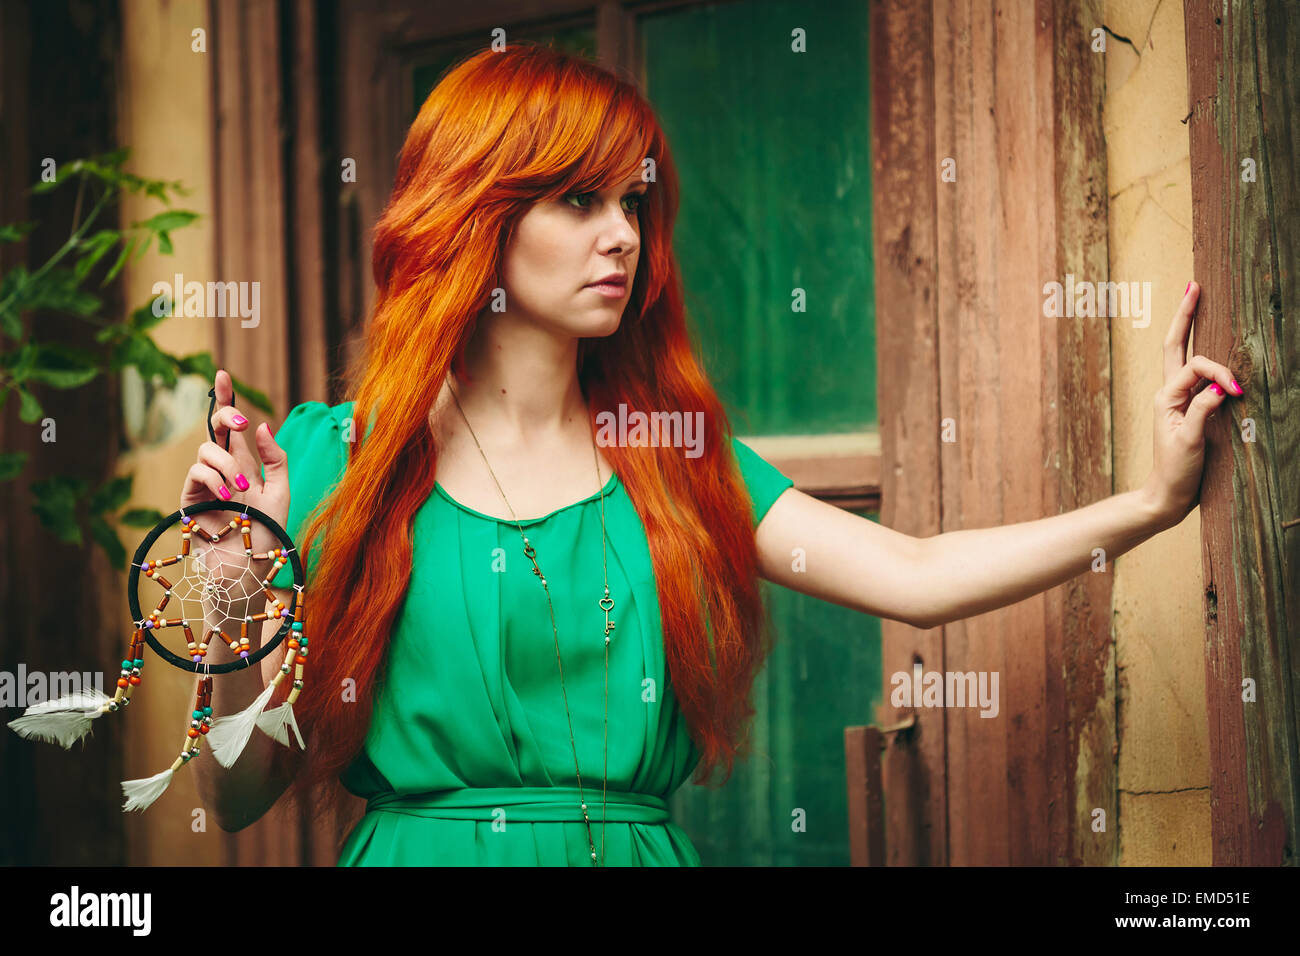 Creative Ritratto di Redhead giovane donna in abito verde con Dream Catcher nelle sue mani. Lunga e bellissima capelli rossi.Il fuoco selettivo Foto Stock